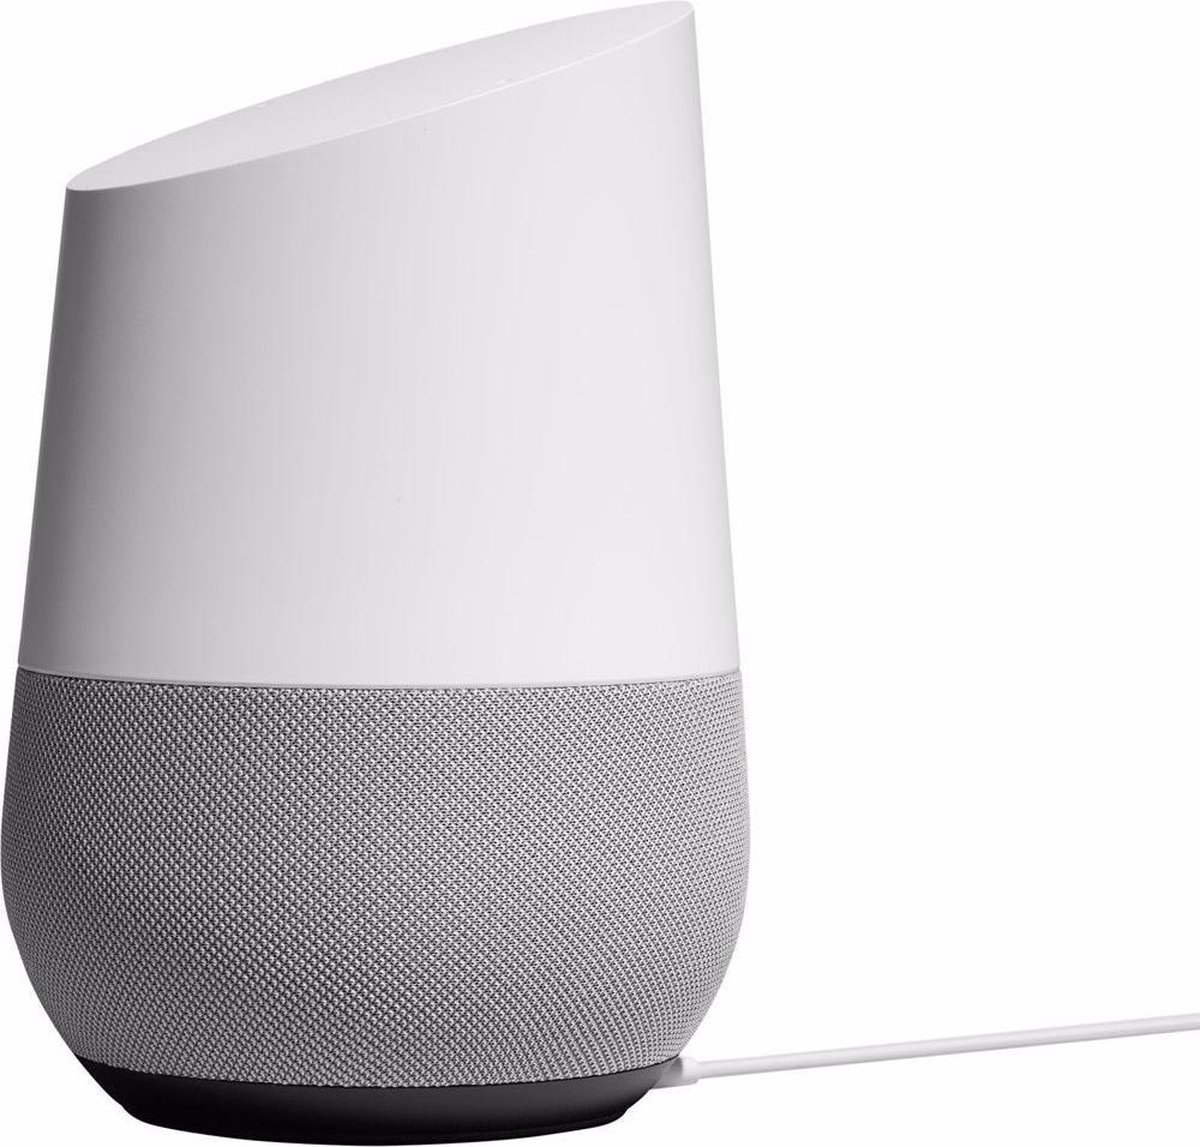 Google Home - Smart speaker / Wit / Nederlandstalig | bol.com